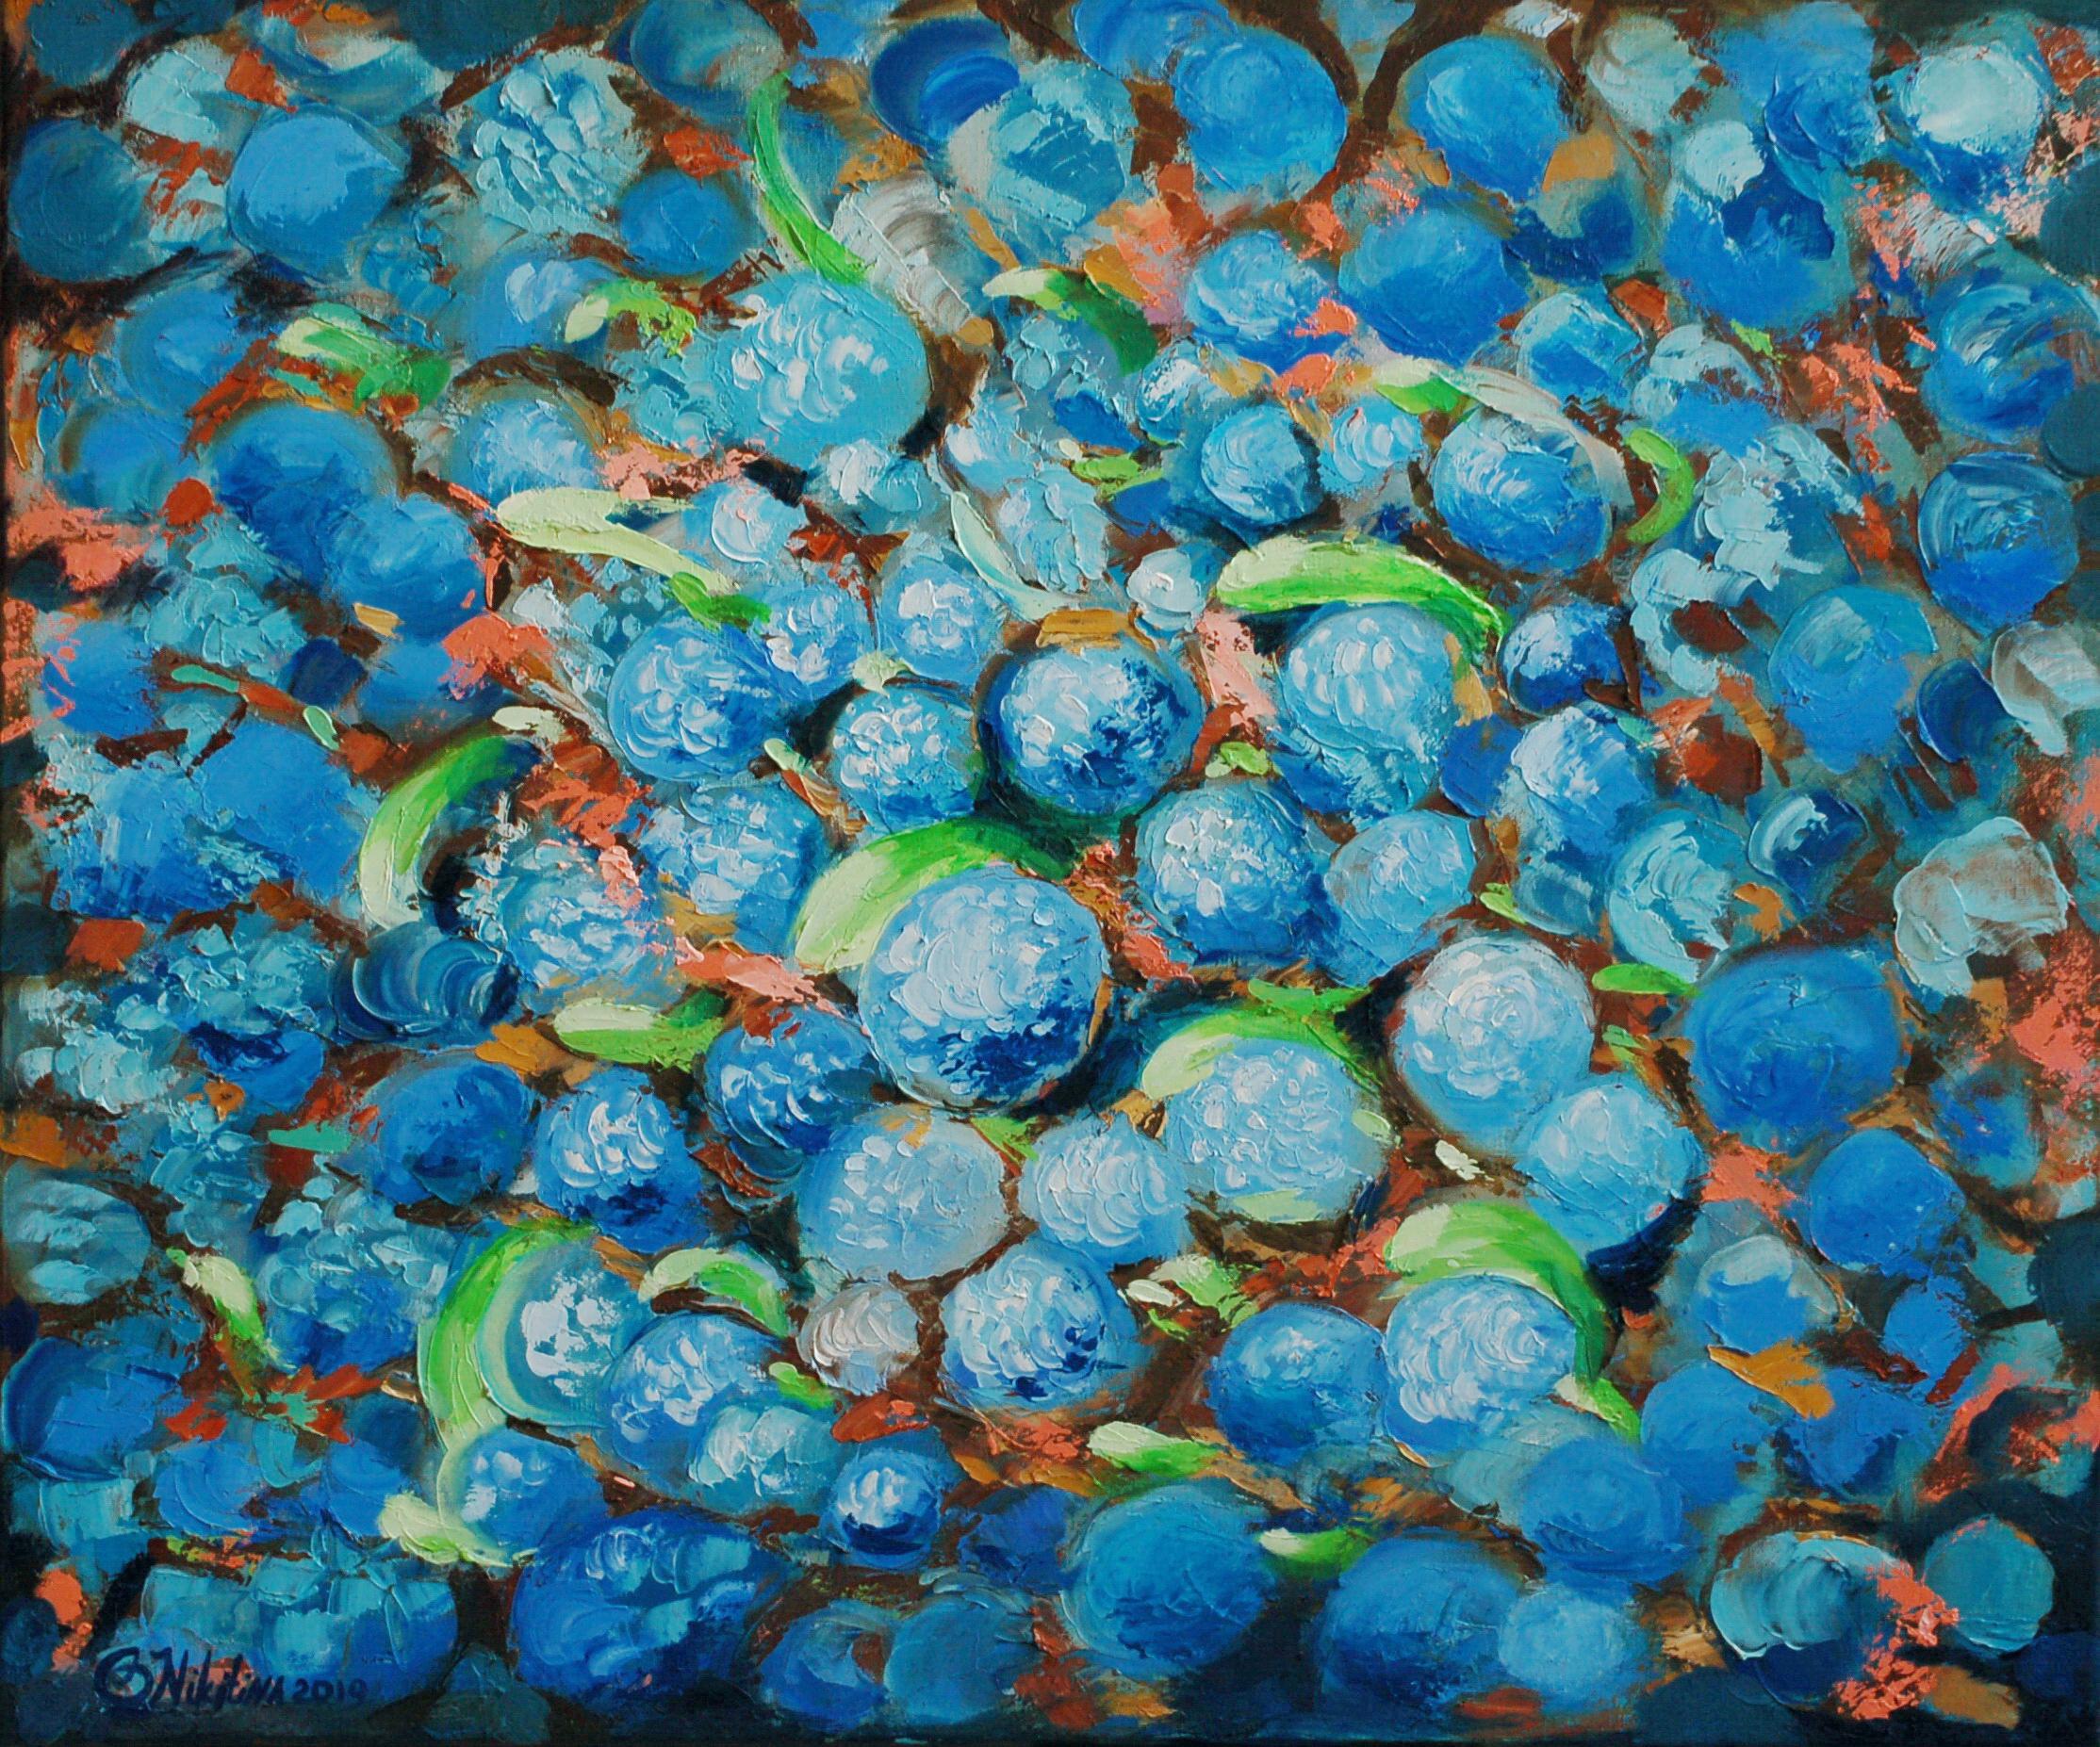 Peinture de poissons abstraite sous l'eau - Art original de poissons - Peinture de vie marine